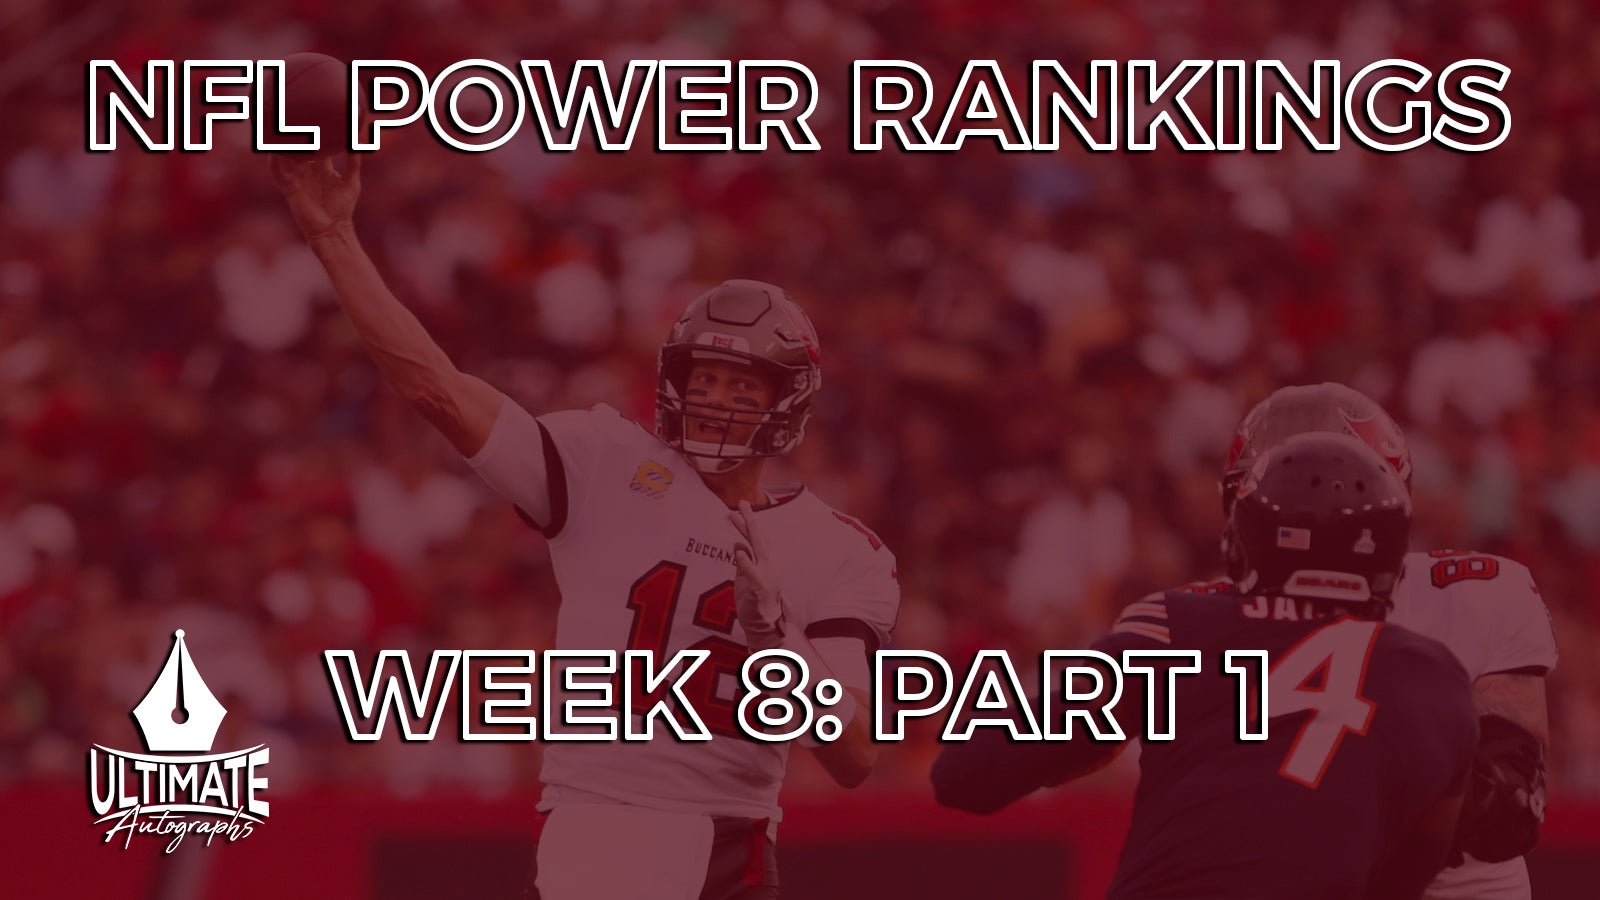 Week 8 Power Rankings: Part 1